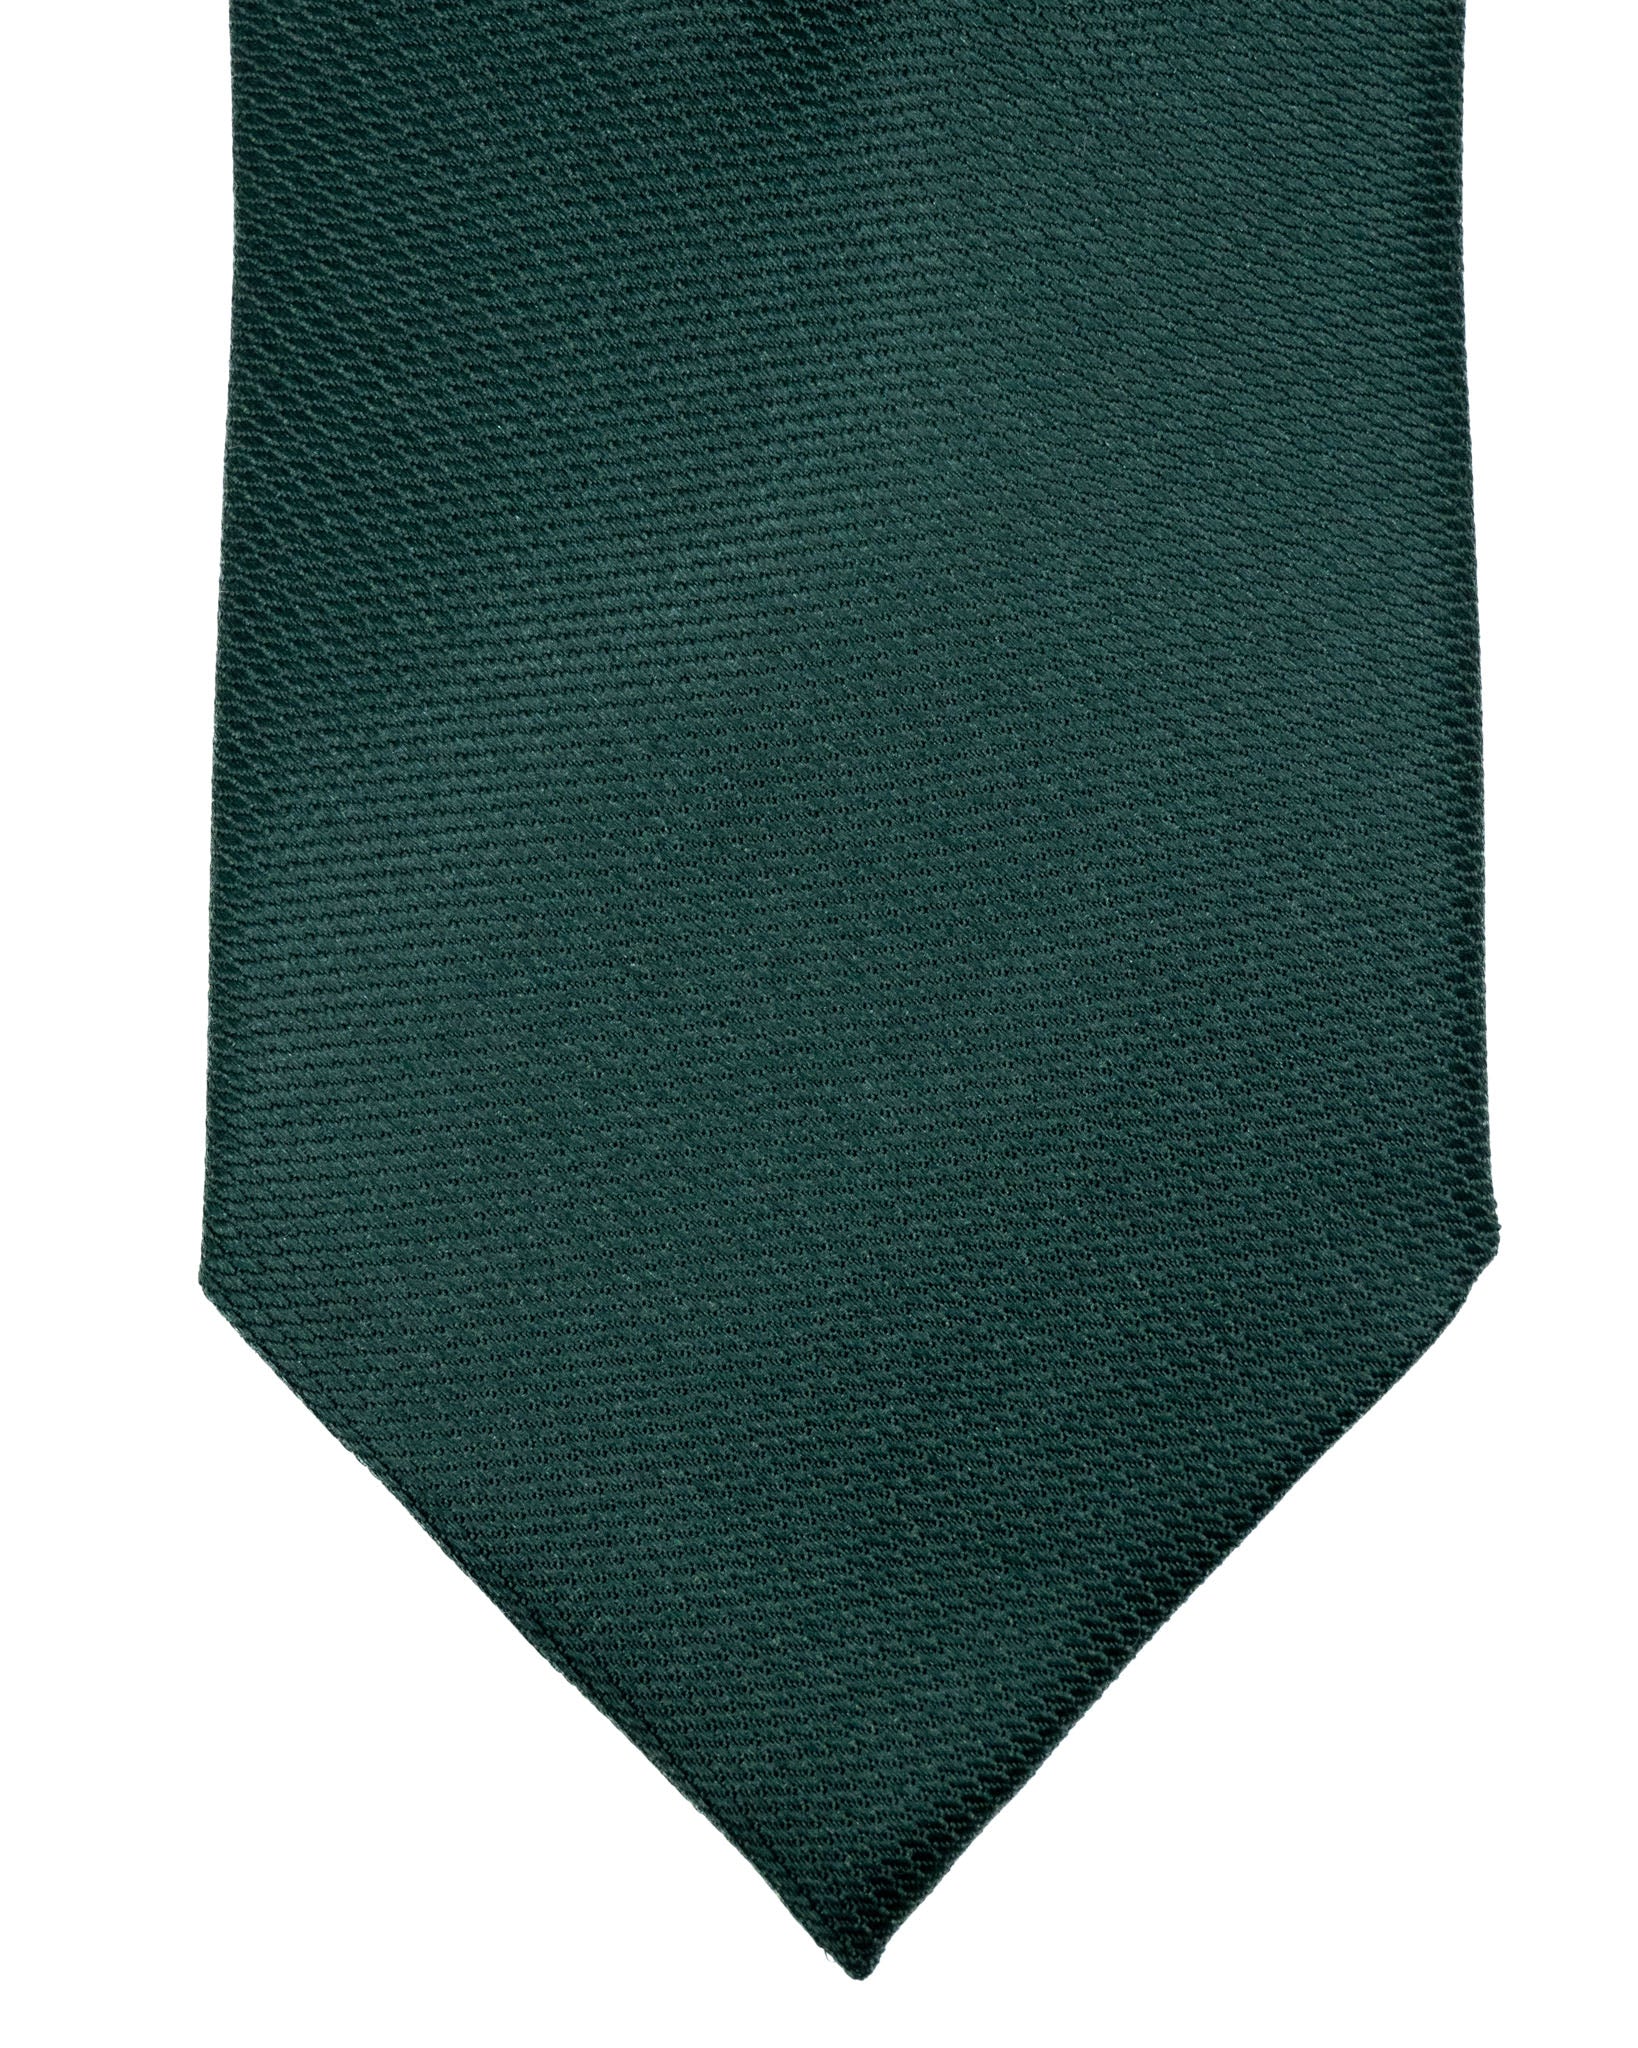 Cravatta - in seta armaturata verde